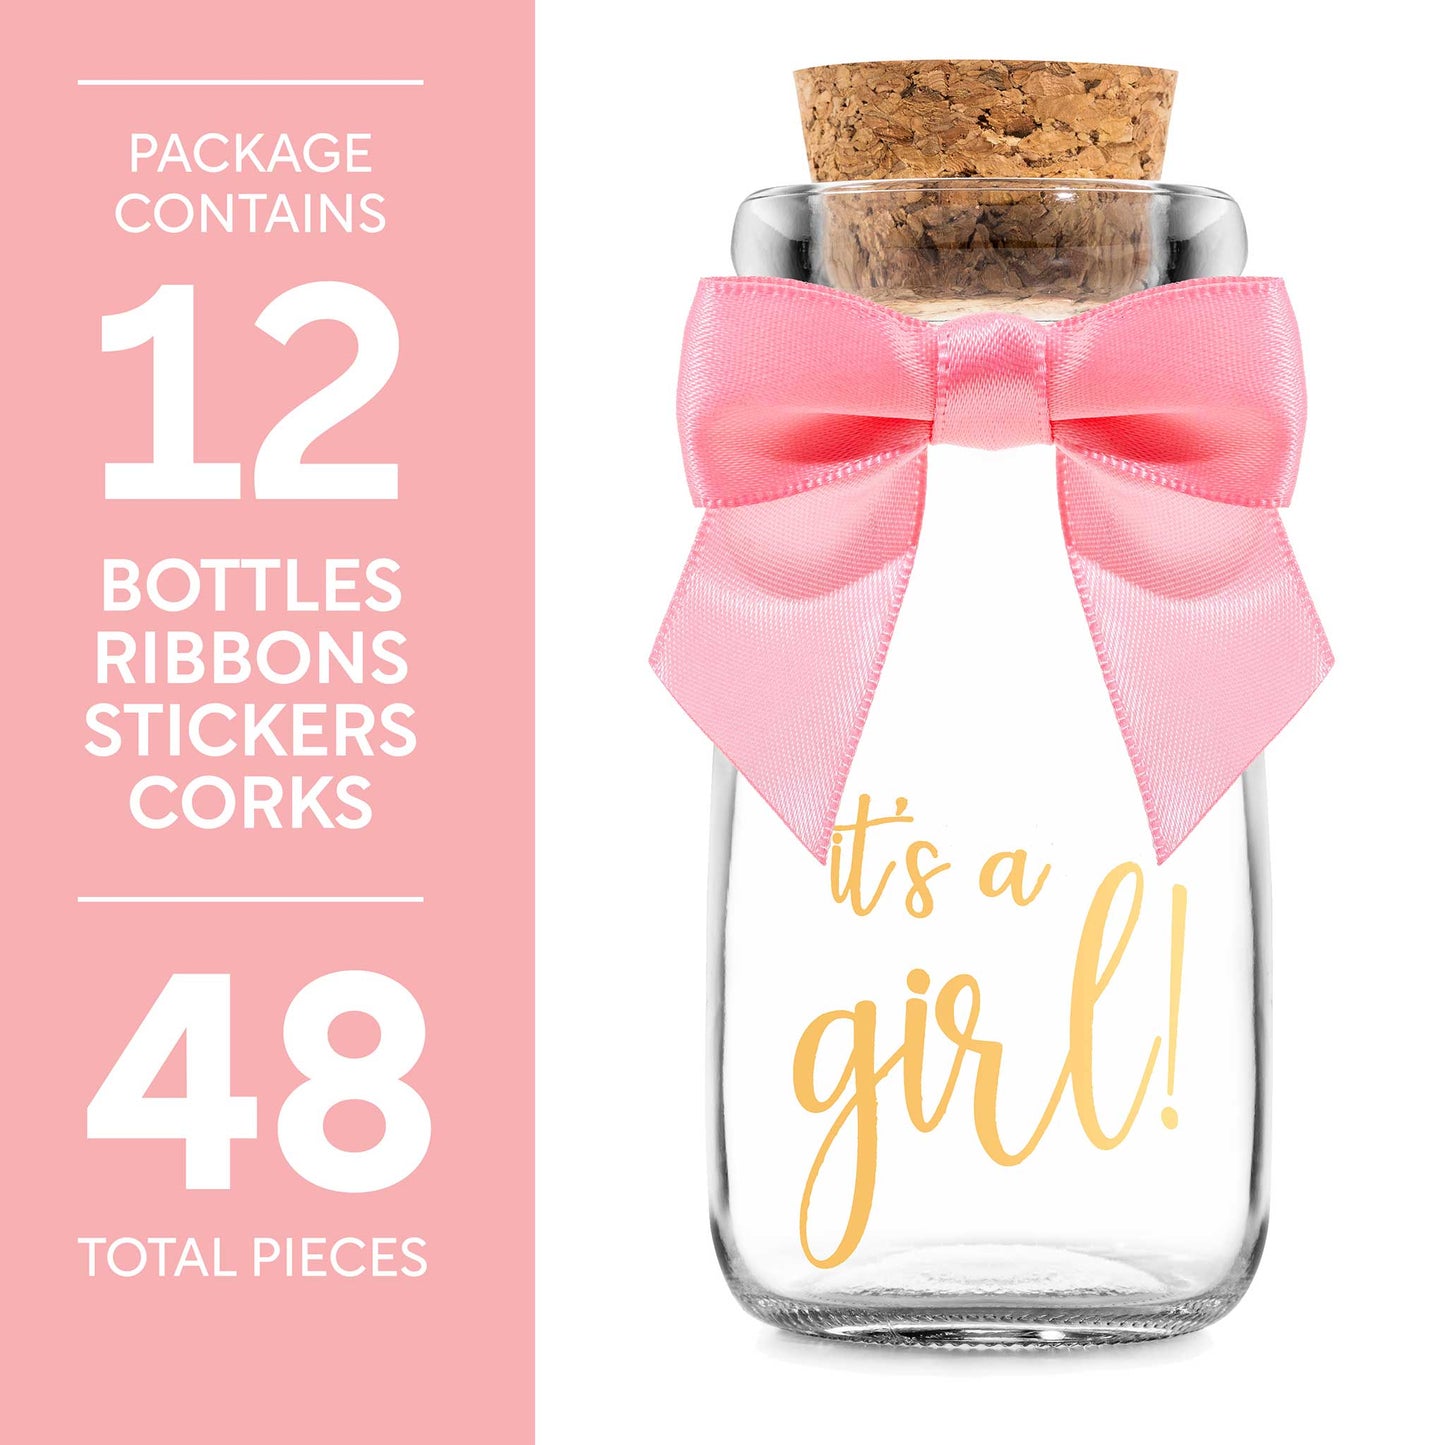 Vintage Milk Glass Bottles - Baby Shower Favors for Guests - 12 Bottles Per Box